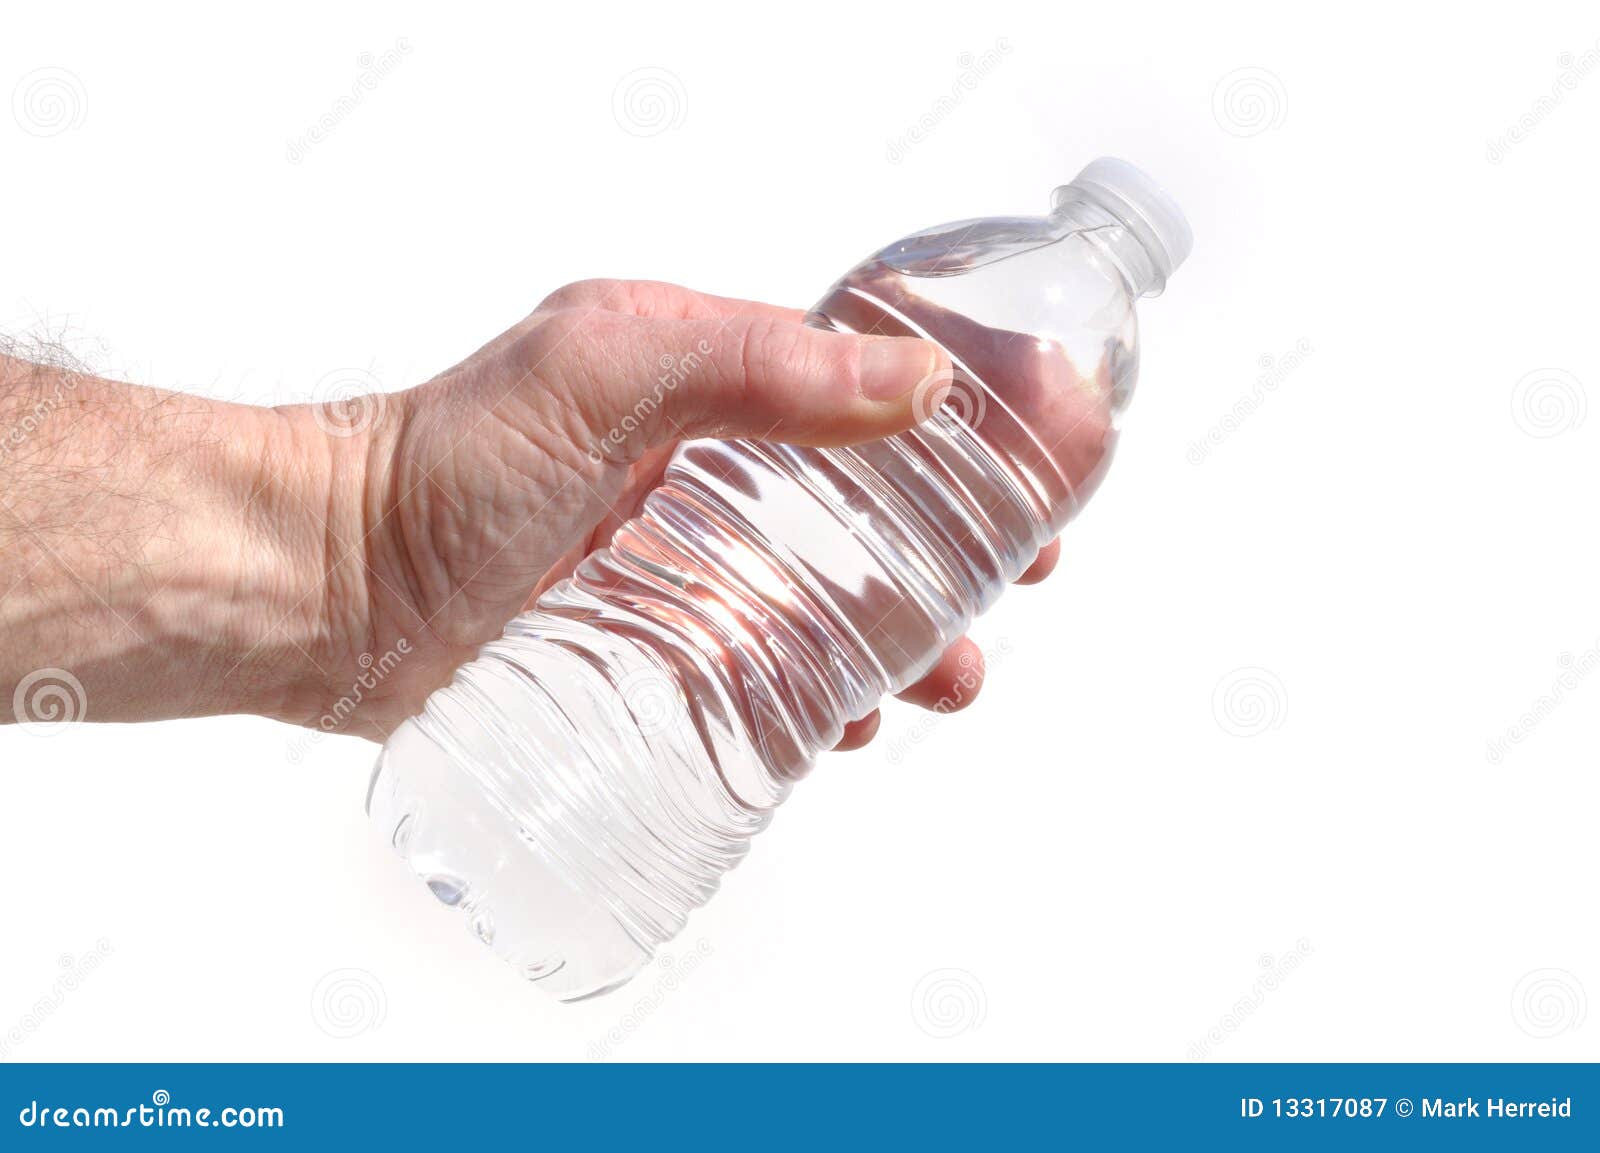 Бутылка воды в руке. Пластиковая бутылка для воды в руках. Бутылка в руке. Бутылка с прозрачной жидкостью в руке.